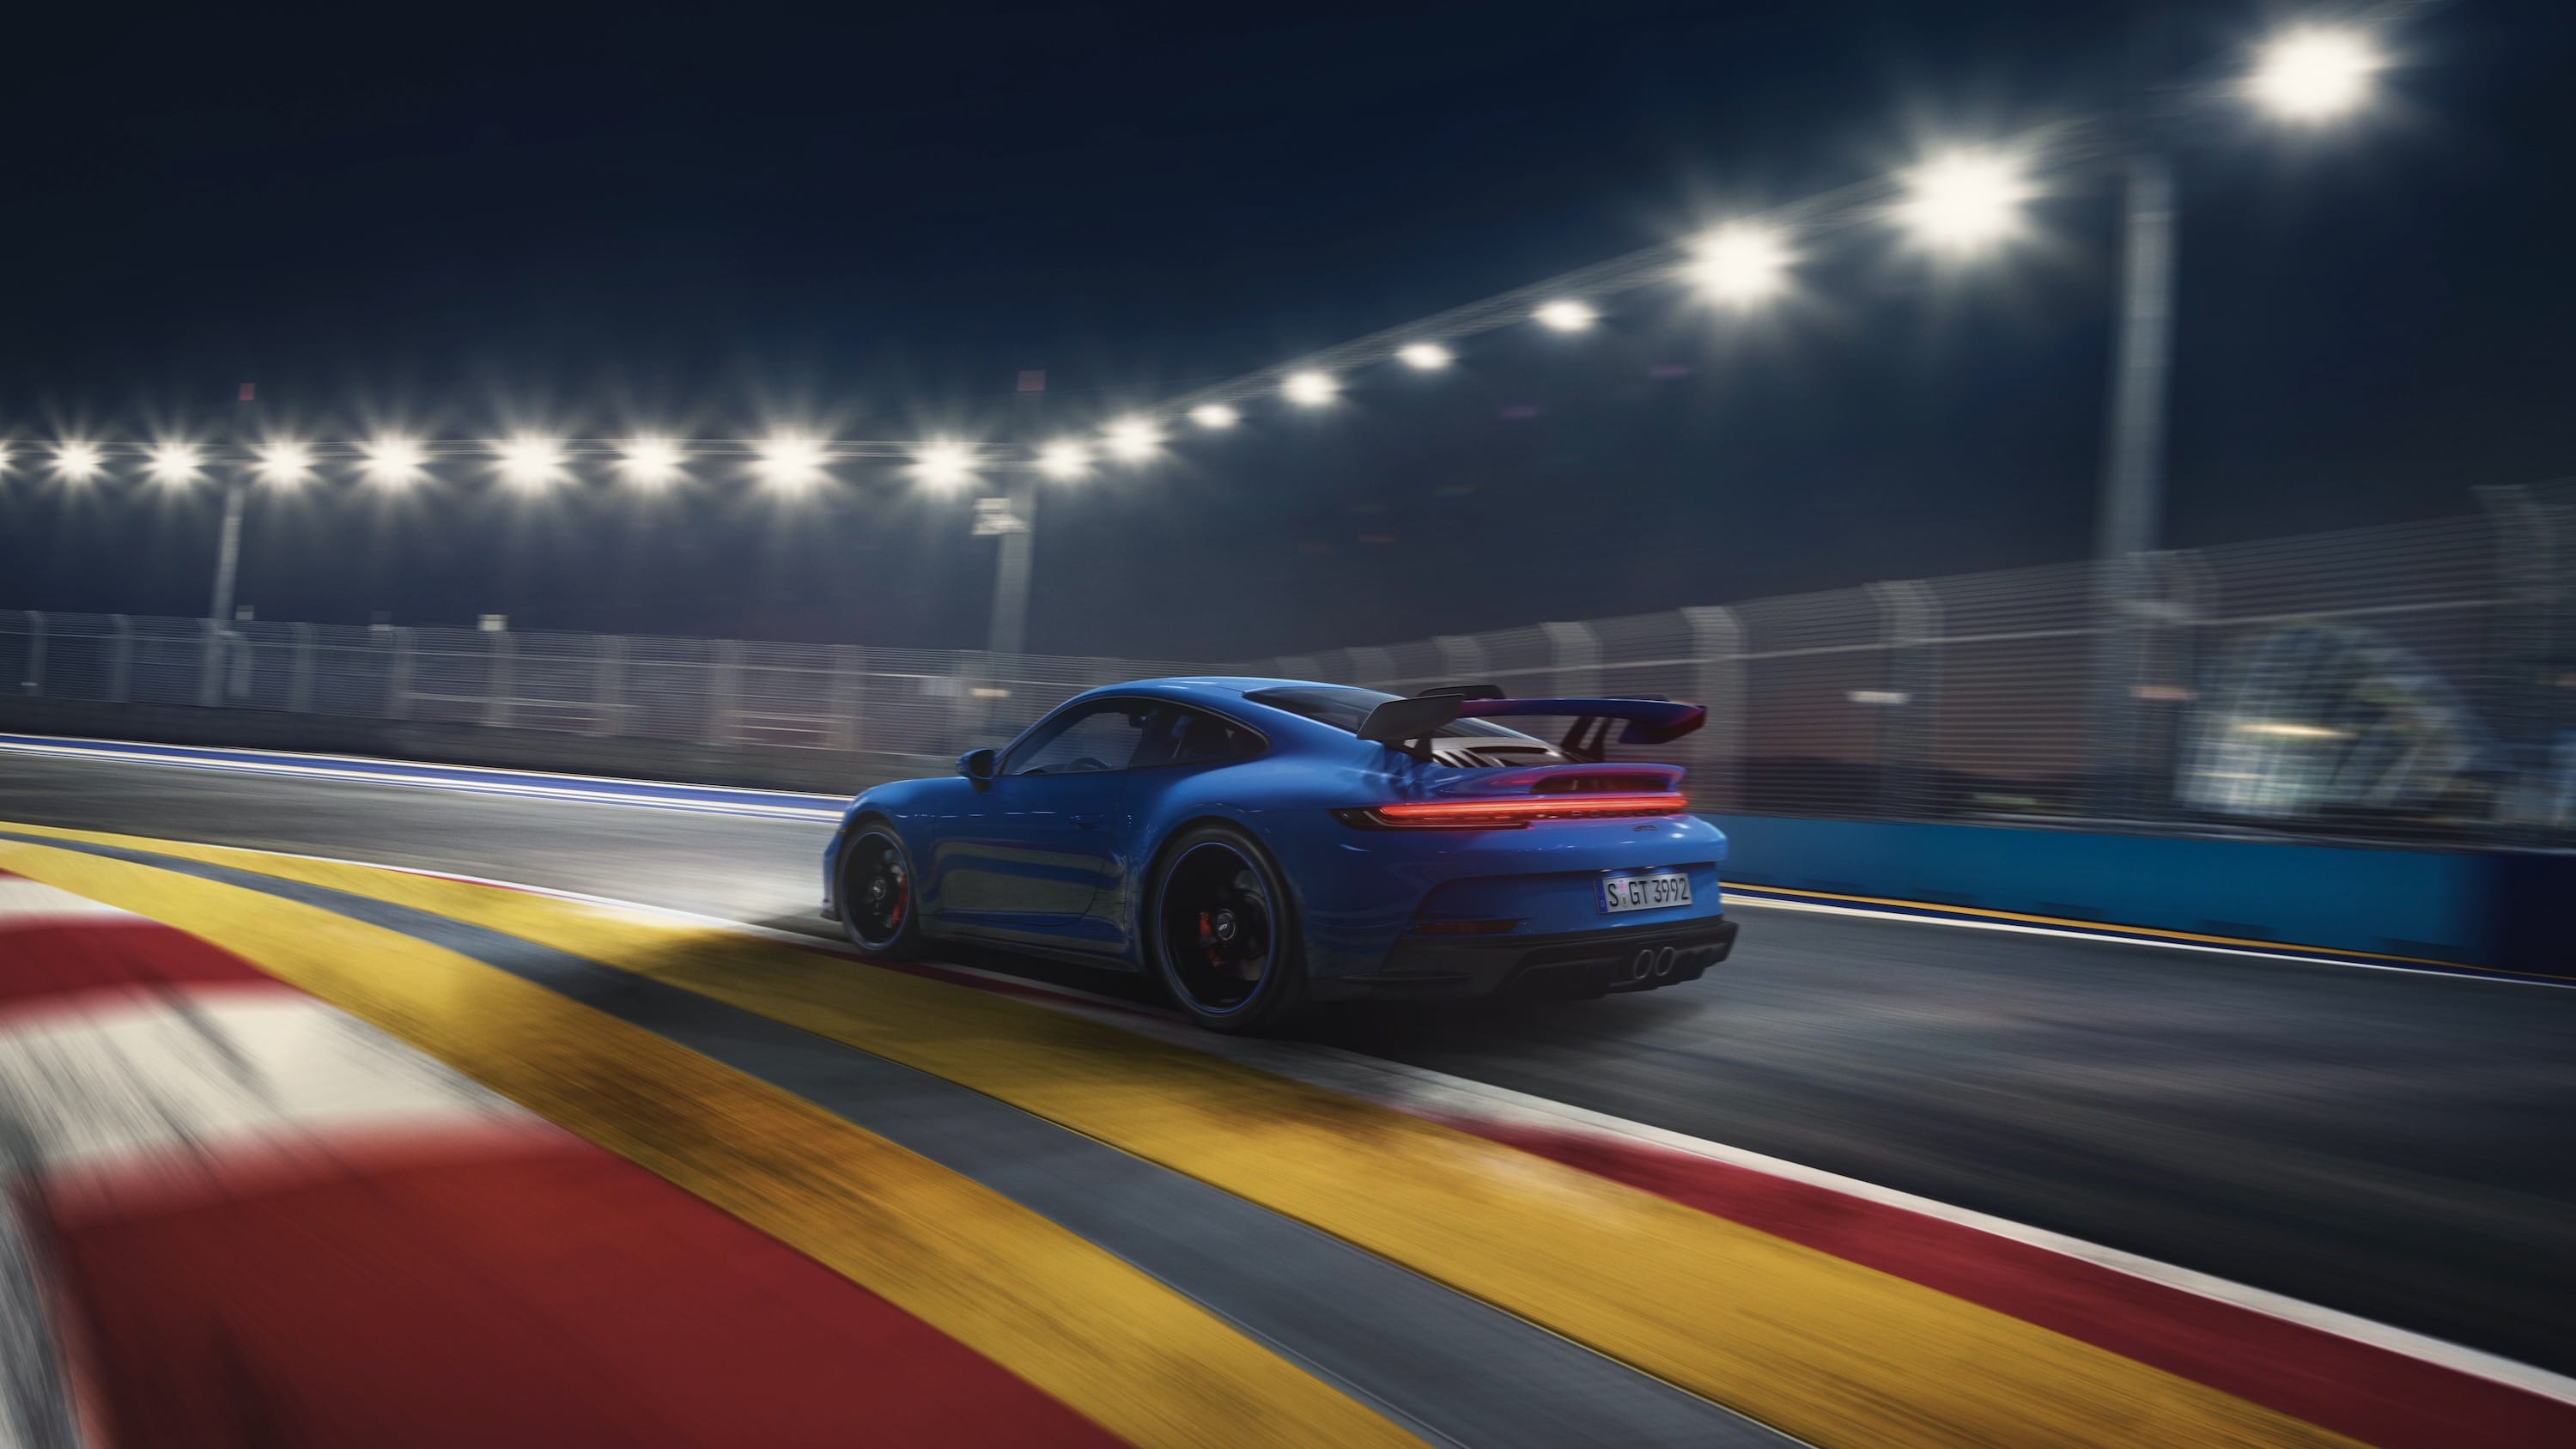 Zdjęcie okładkowe wpisu Porsche zaprezentowało nowe 911 GT3 (992) z wolnossącym silnikiem i poprawioną aerodynamiką, które jest szybsze od poprzedniego GT3 RS